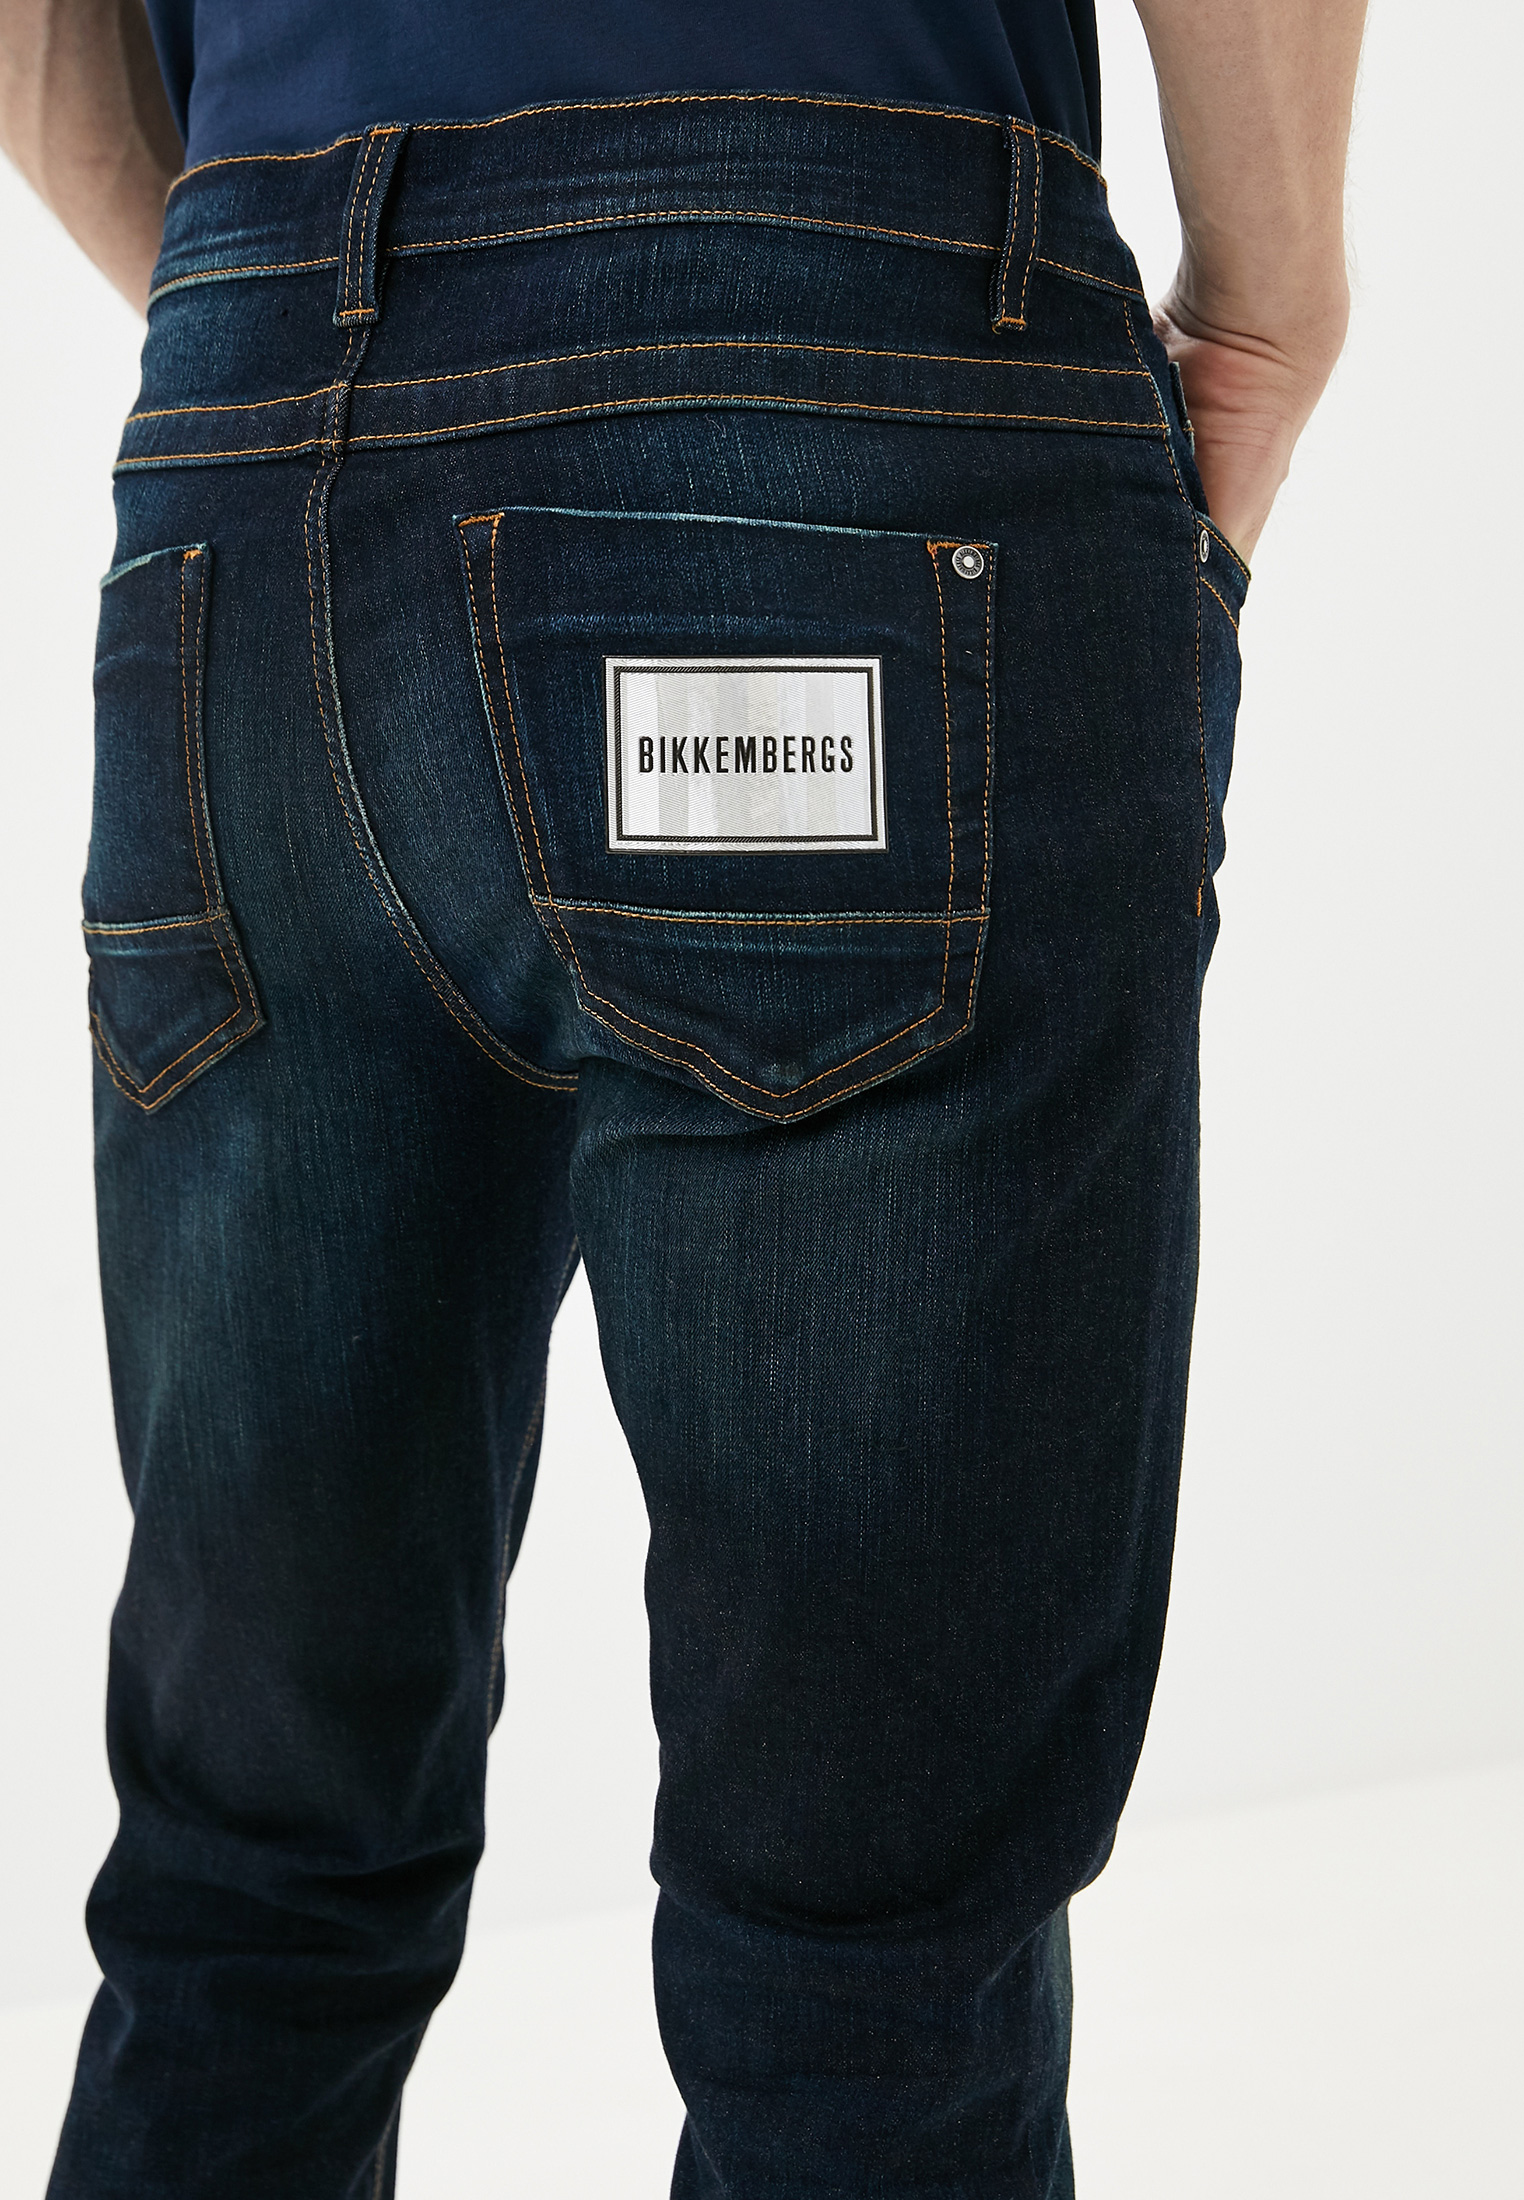 Мужские зауженные джинсы Bikkembergs (Биккембергс) C Q 101 01 S 3337: изображение 4